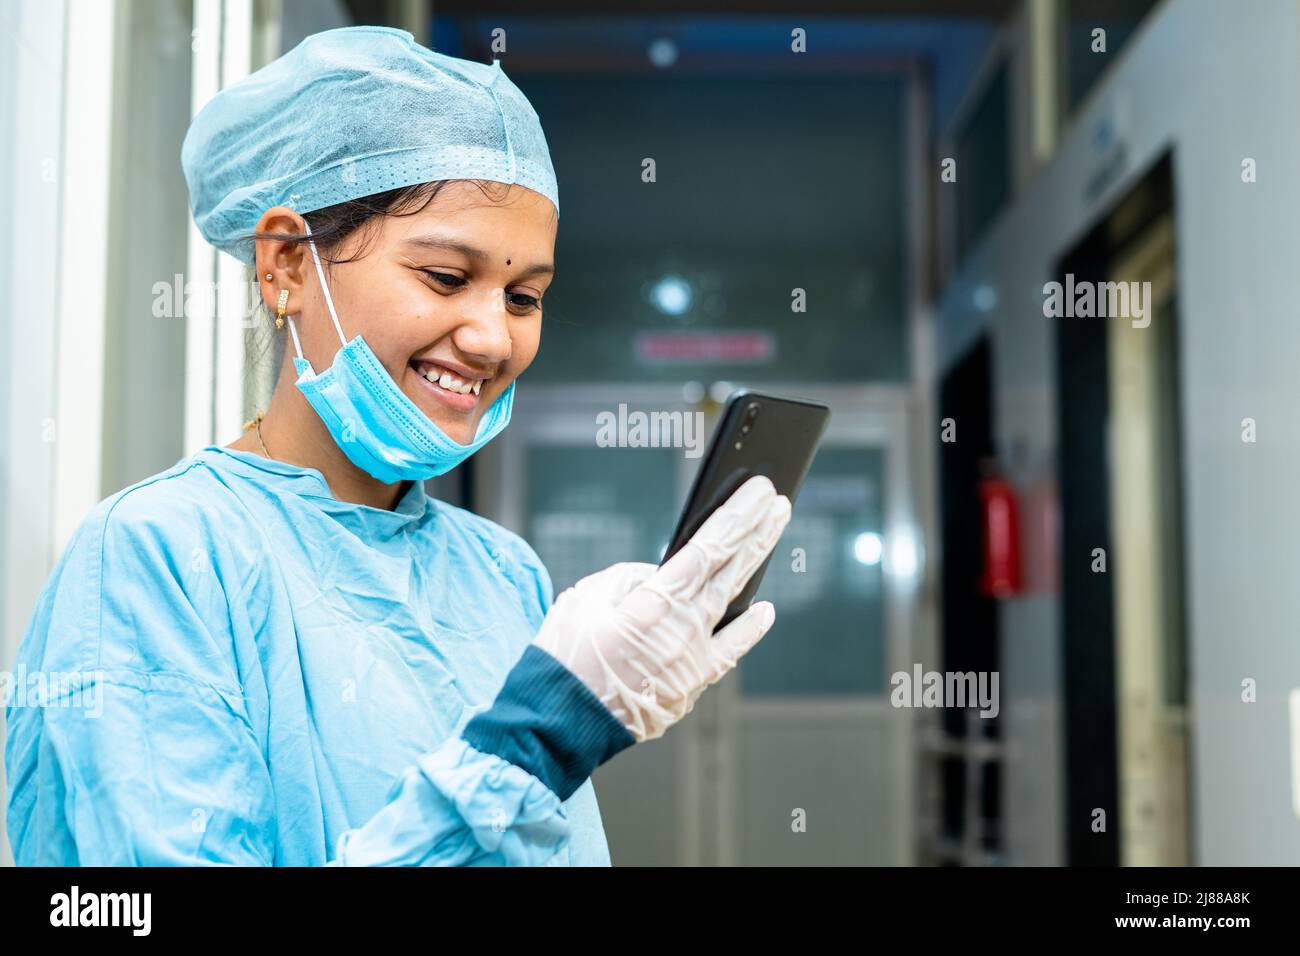 Heureux souriant médecin traitant occupé à utiliser le téléphone mobile dans le couloir de l'hôpital - concept d'utiliser social medica, la technologie et l'Internet Banque D'Images